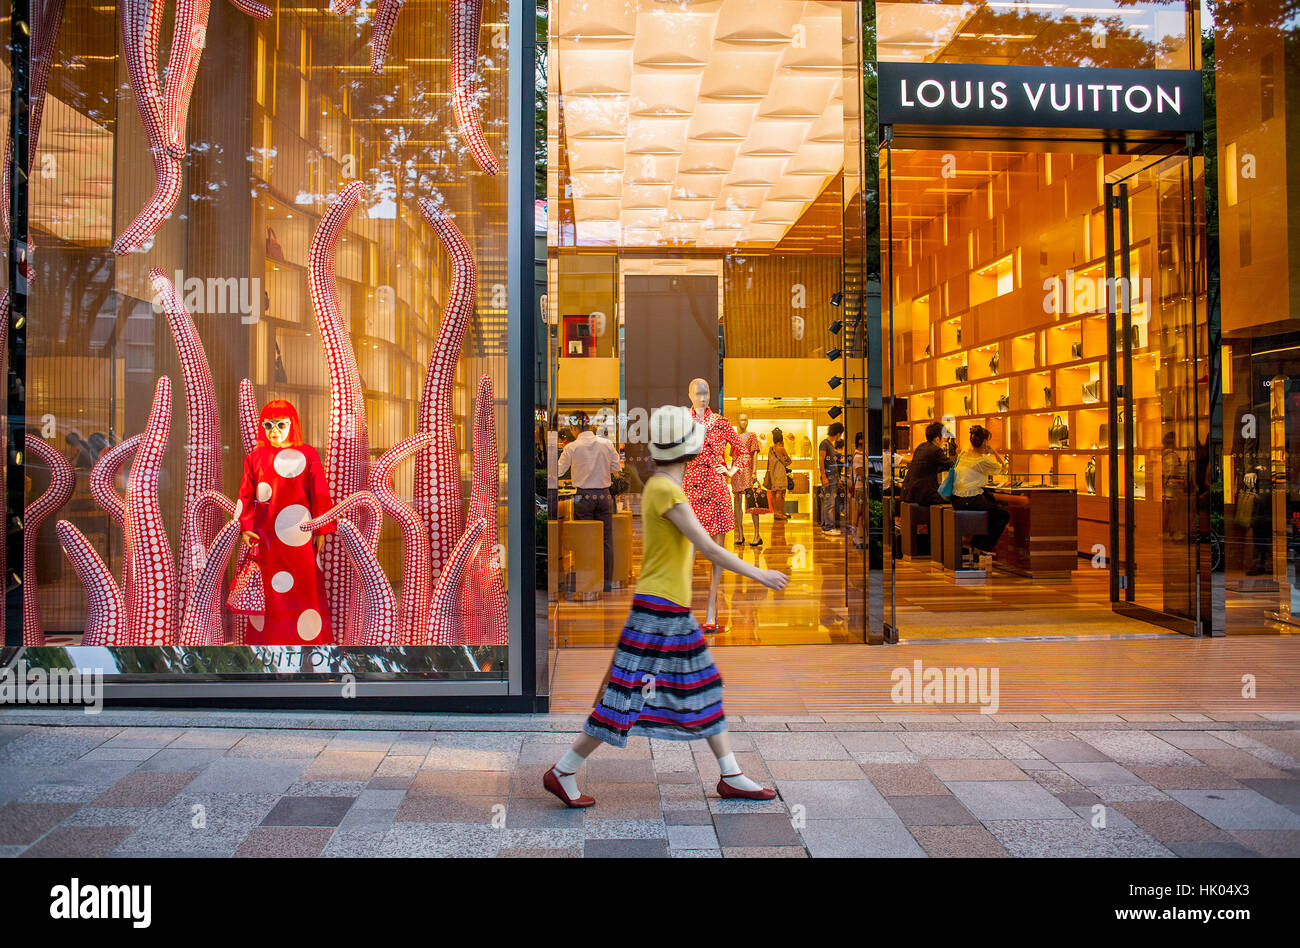 Japon – Louis Vuitton va ouvrir son plus grand magasin au Japon le 1er  février 2020 à Osaka – Occitanie Japon – Un pont entre Toulouse,  l'Occitanie et le Japon